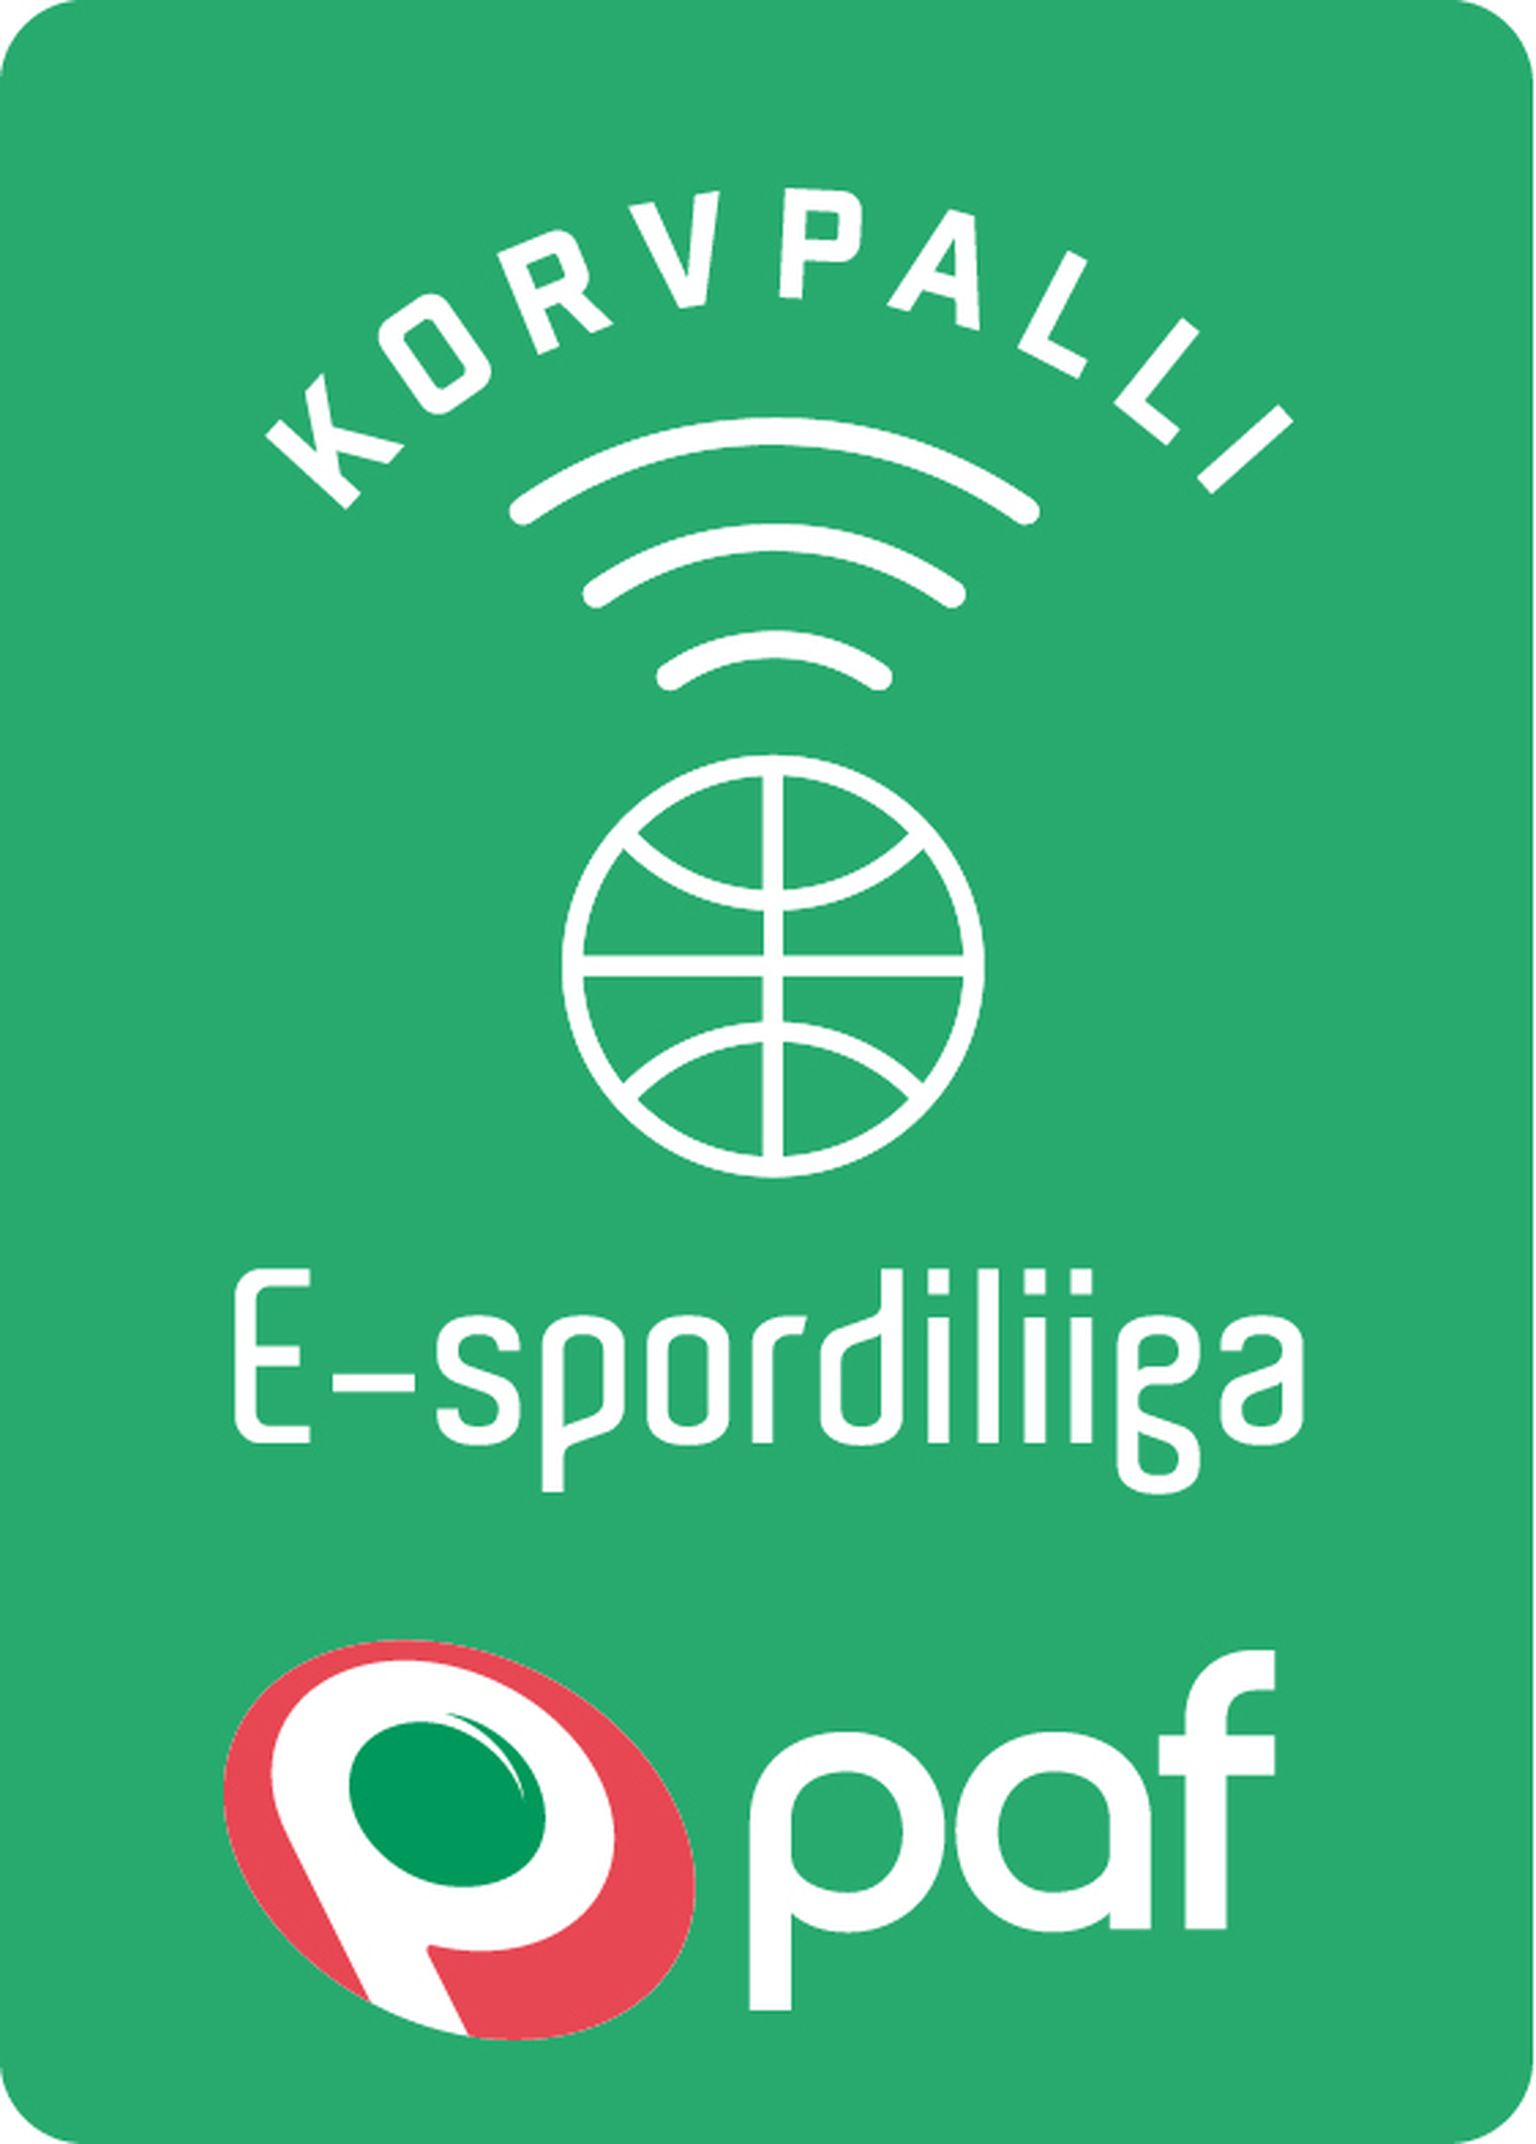 PAF Korvpalli E-spordiliiga logo.